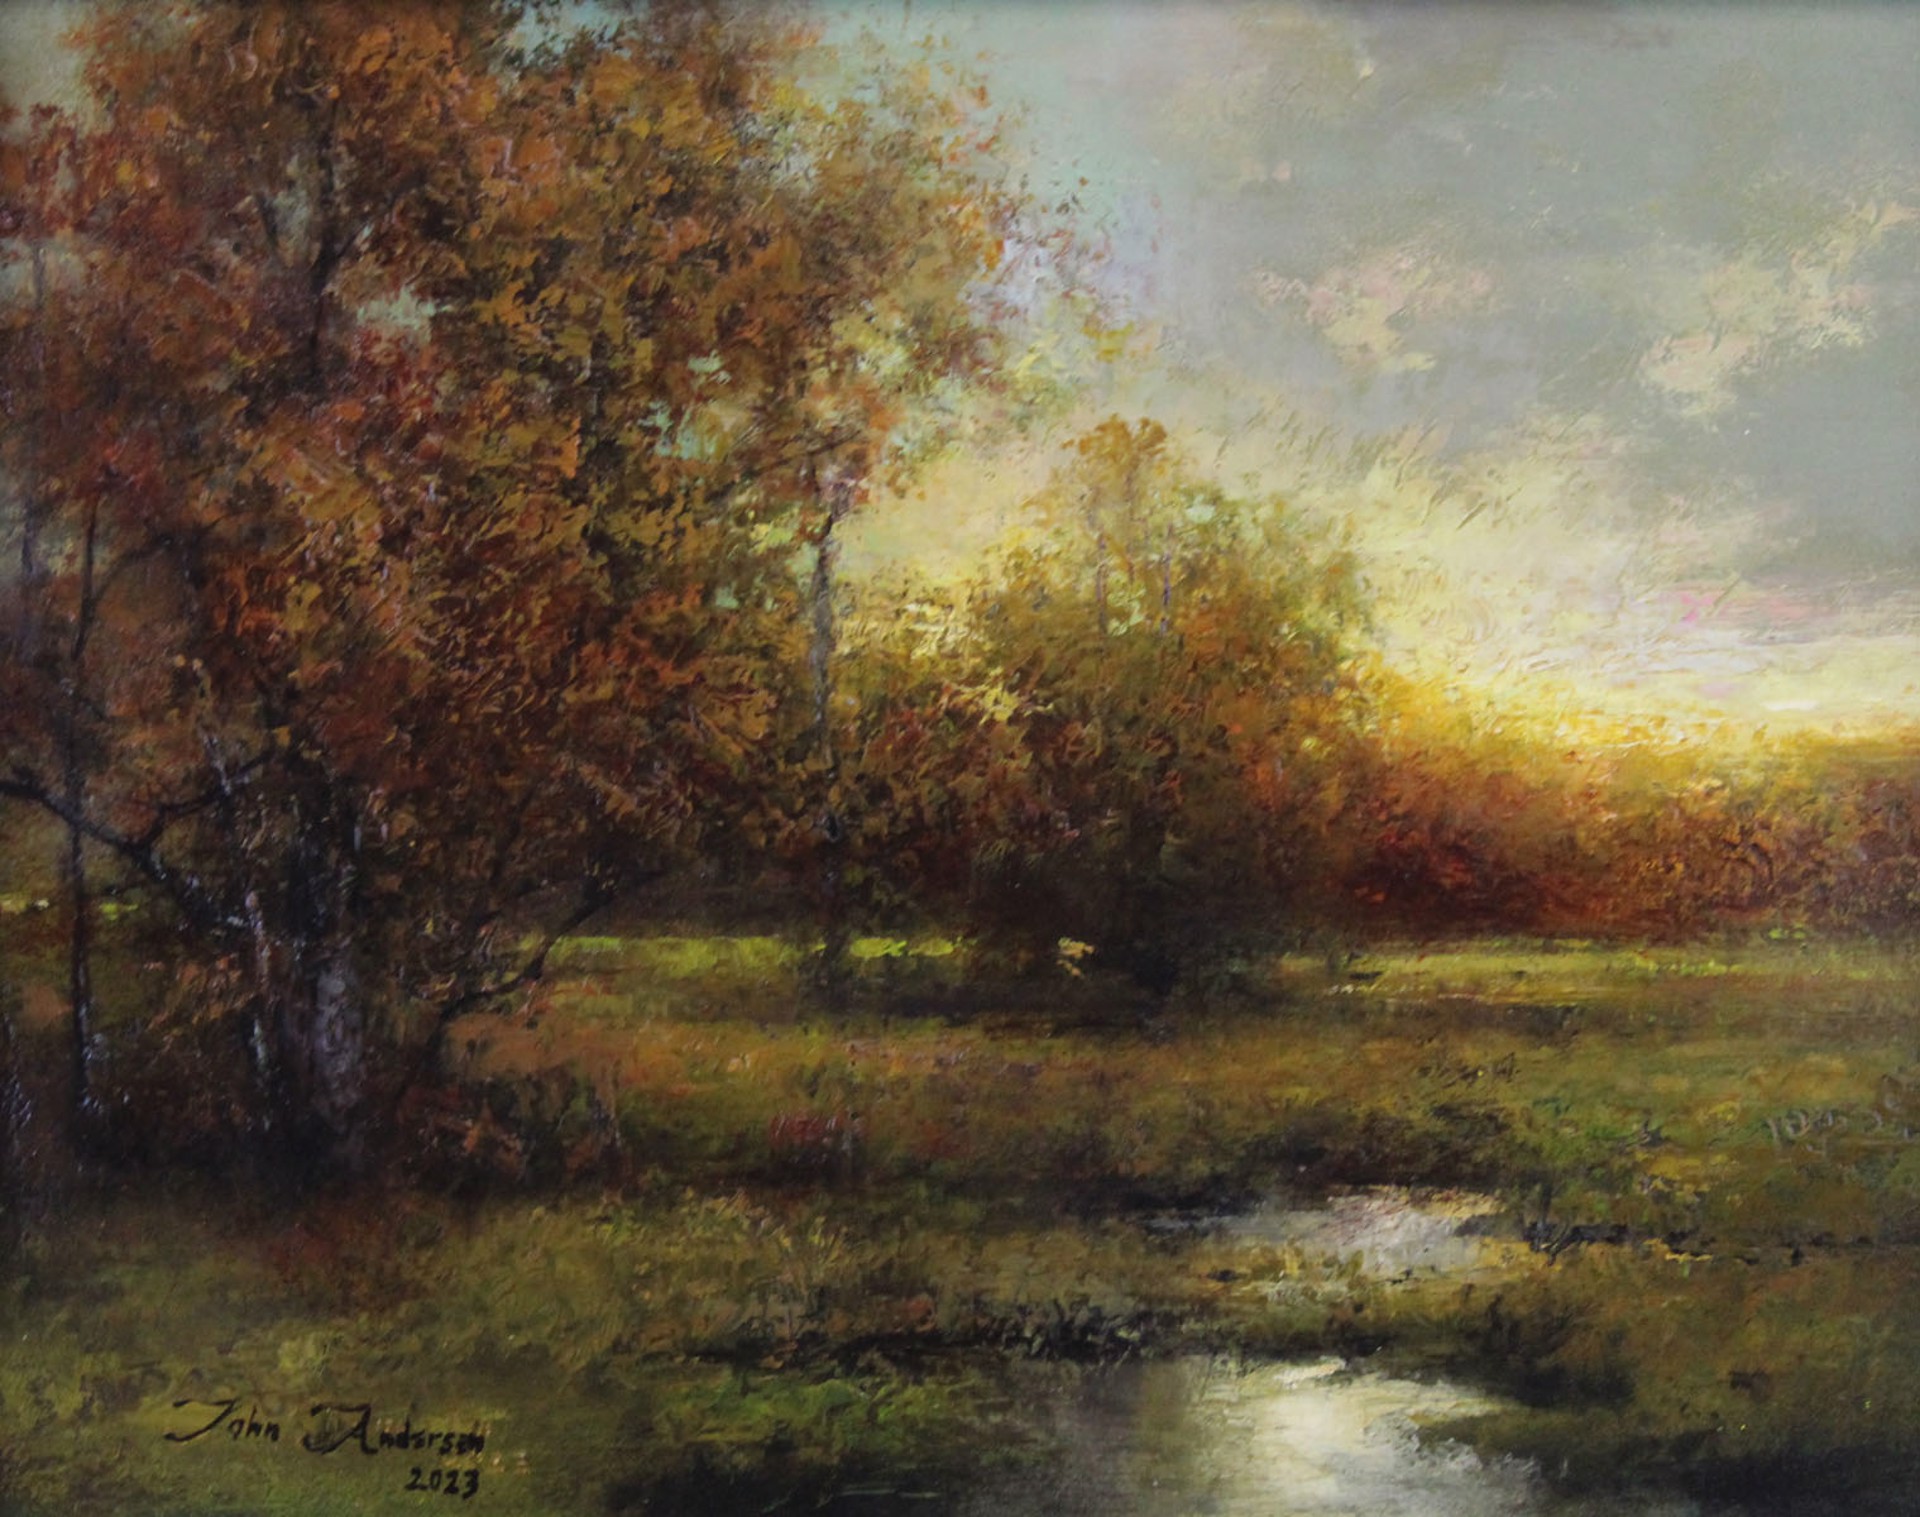 October Light by John Andersen